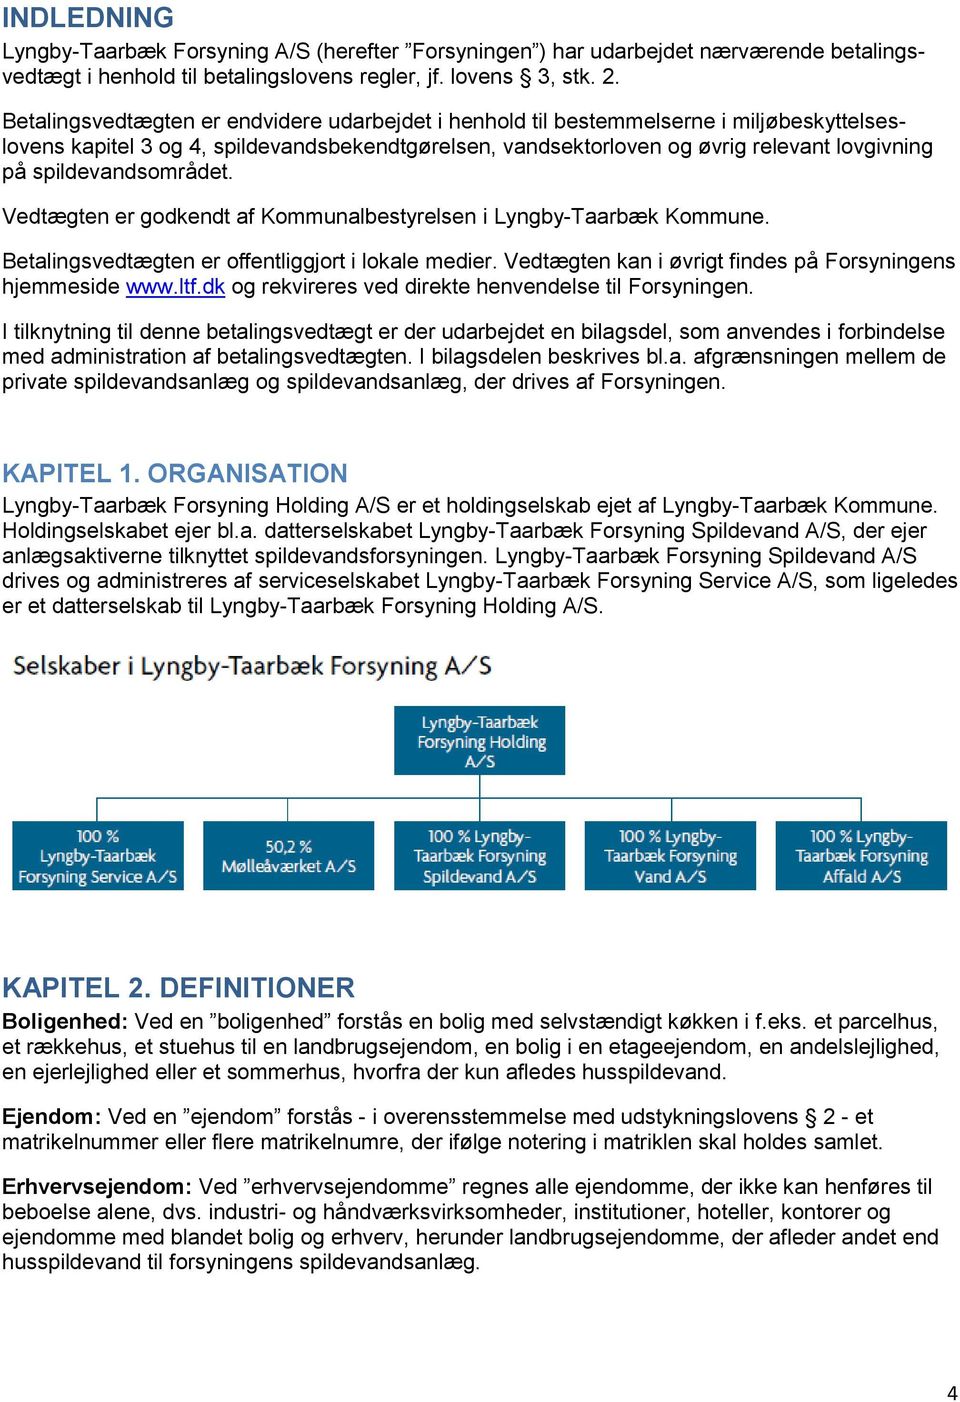 spildevandsområdet. Vedtægten er godkendt af Kommunalbestyrelsen i Lyngby-Taarbæk Kommune. Betalingsvedtægten er offentliggjort i lokale medier.